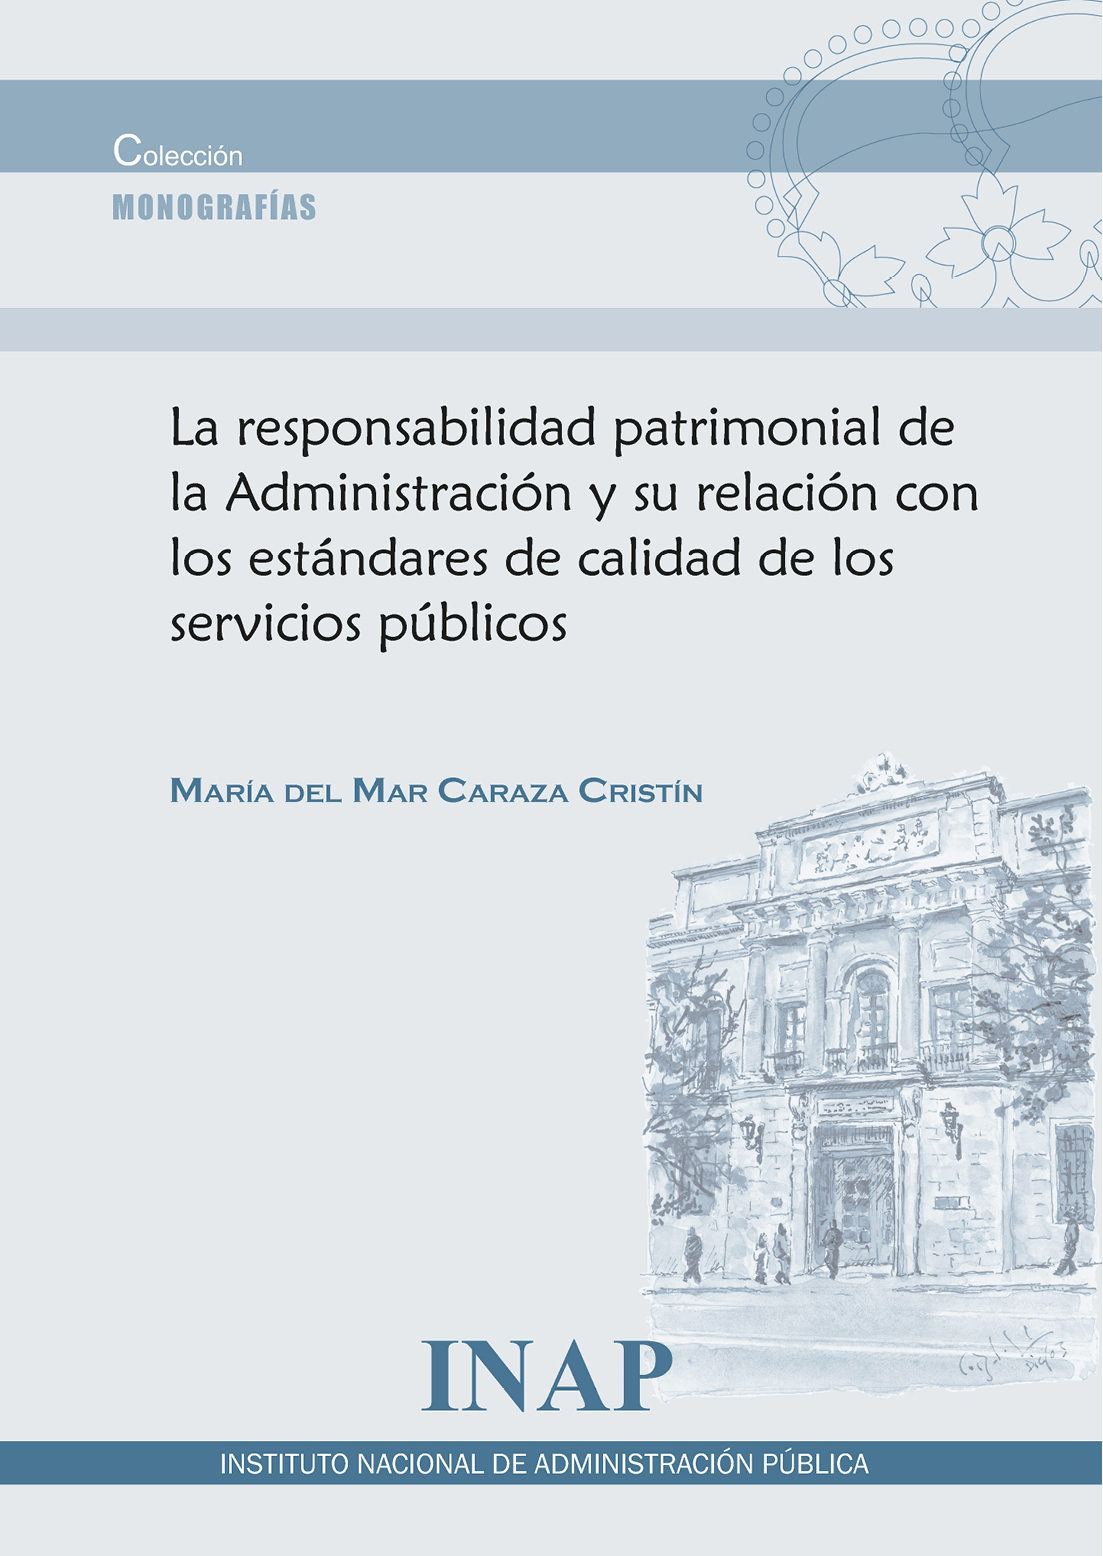 La responsabilidad patrimonial de la Administración y su relación con los estándares de calidad de los servicios públicos